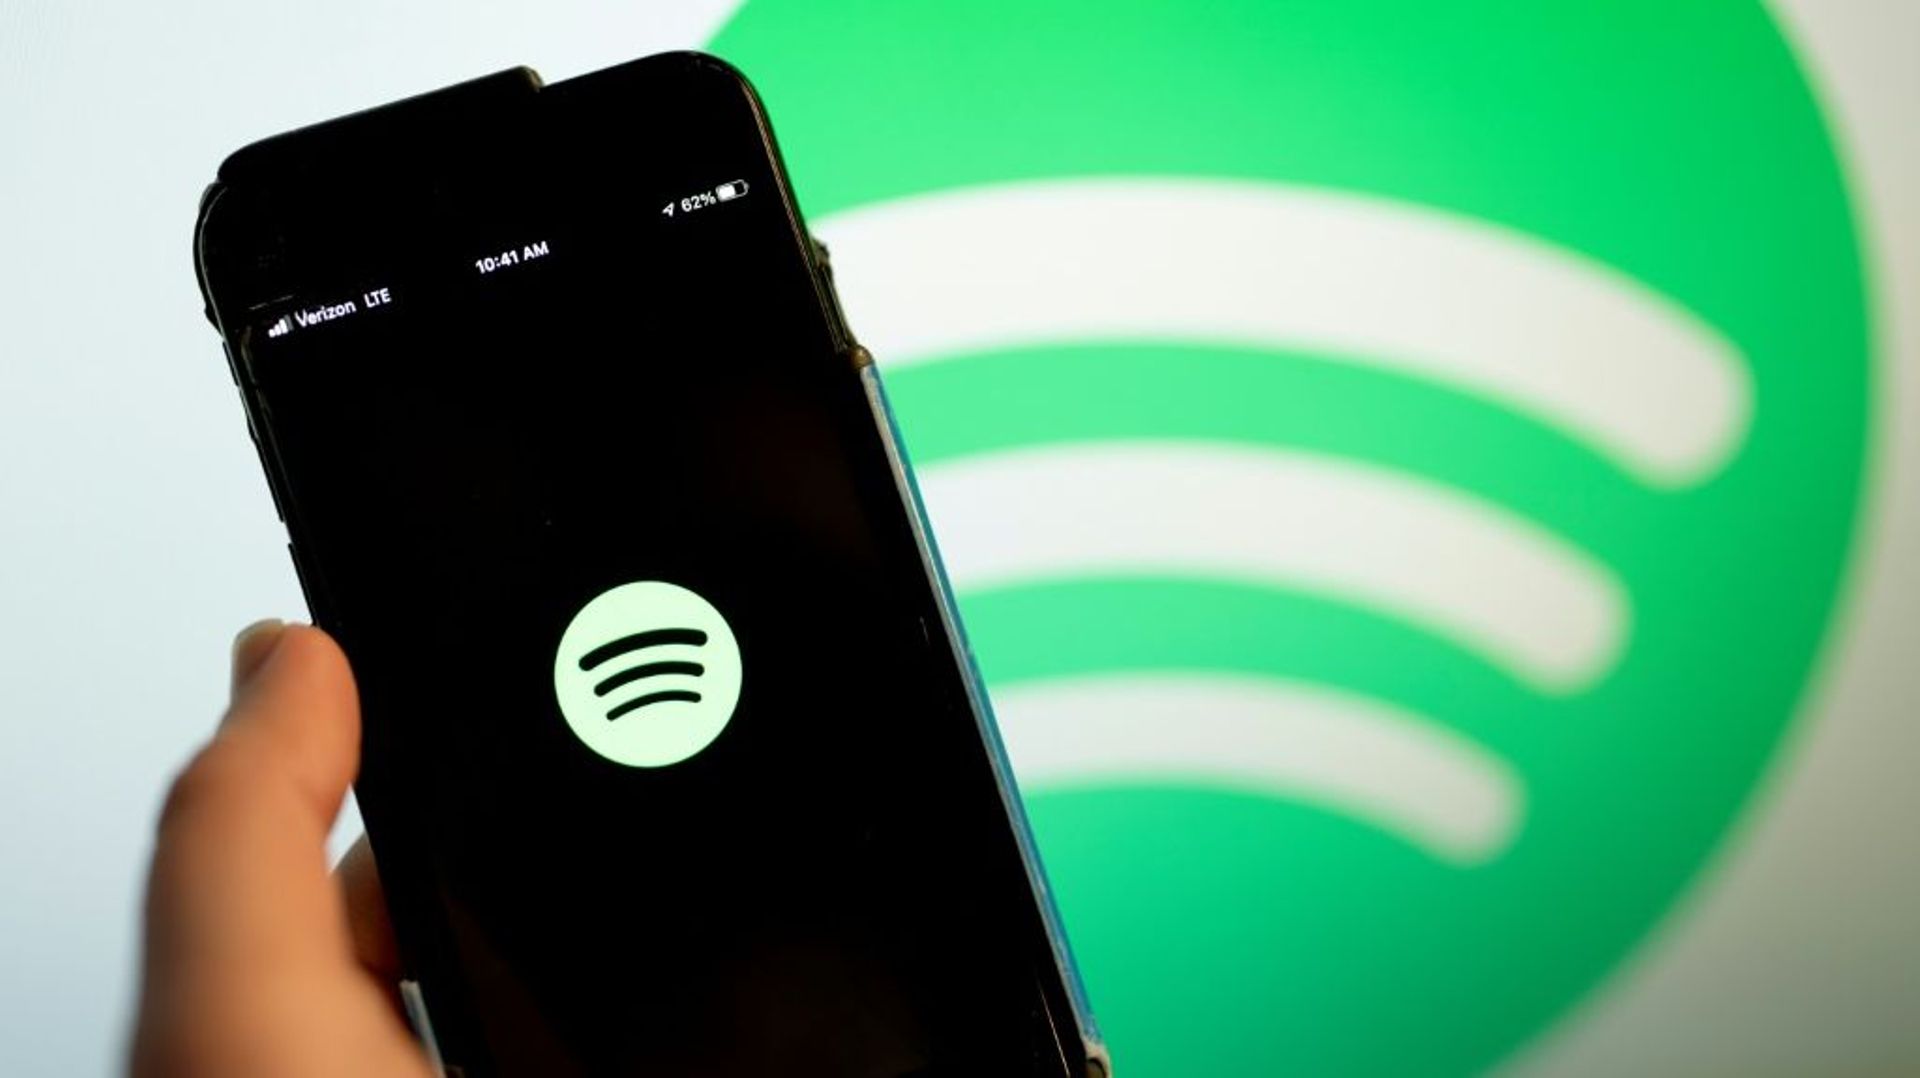 Spotify, né à Stockholm, accuse régulièrement des pertes depuis plusieurs années